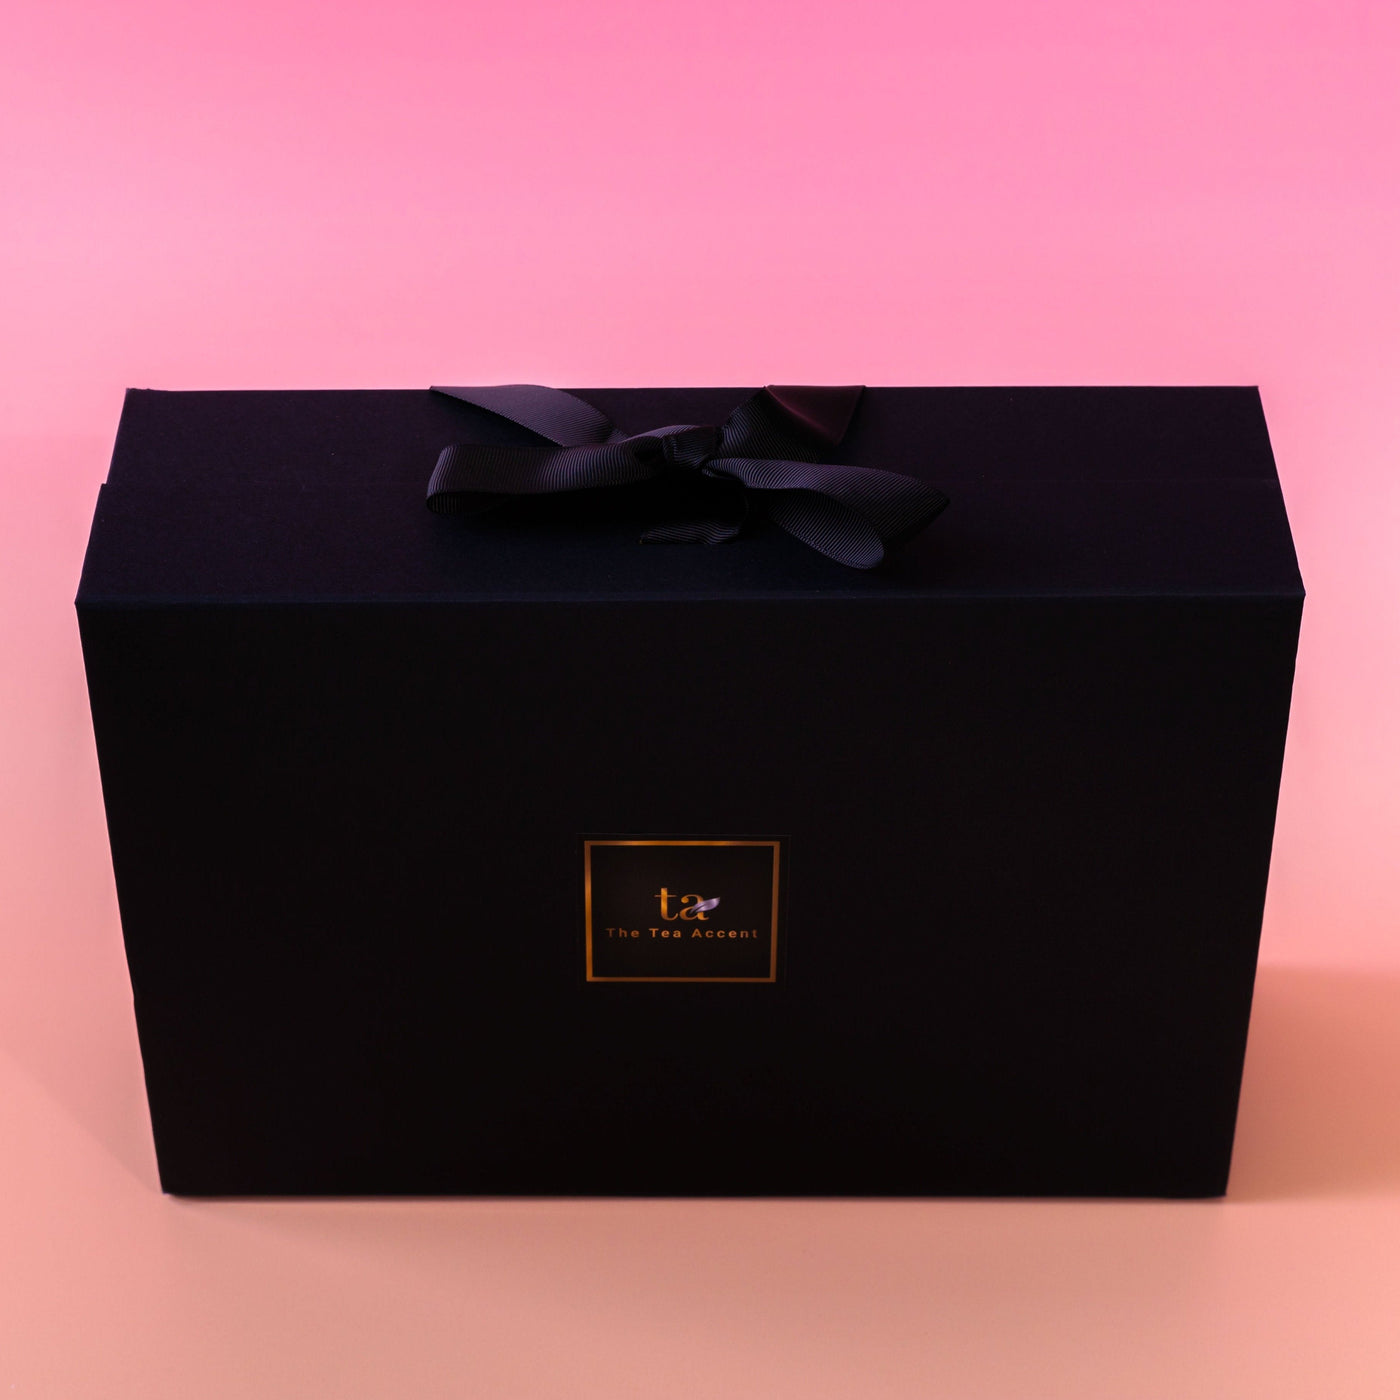 Thankful Gift Box- Premium Black Teas & Green Teas Collection